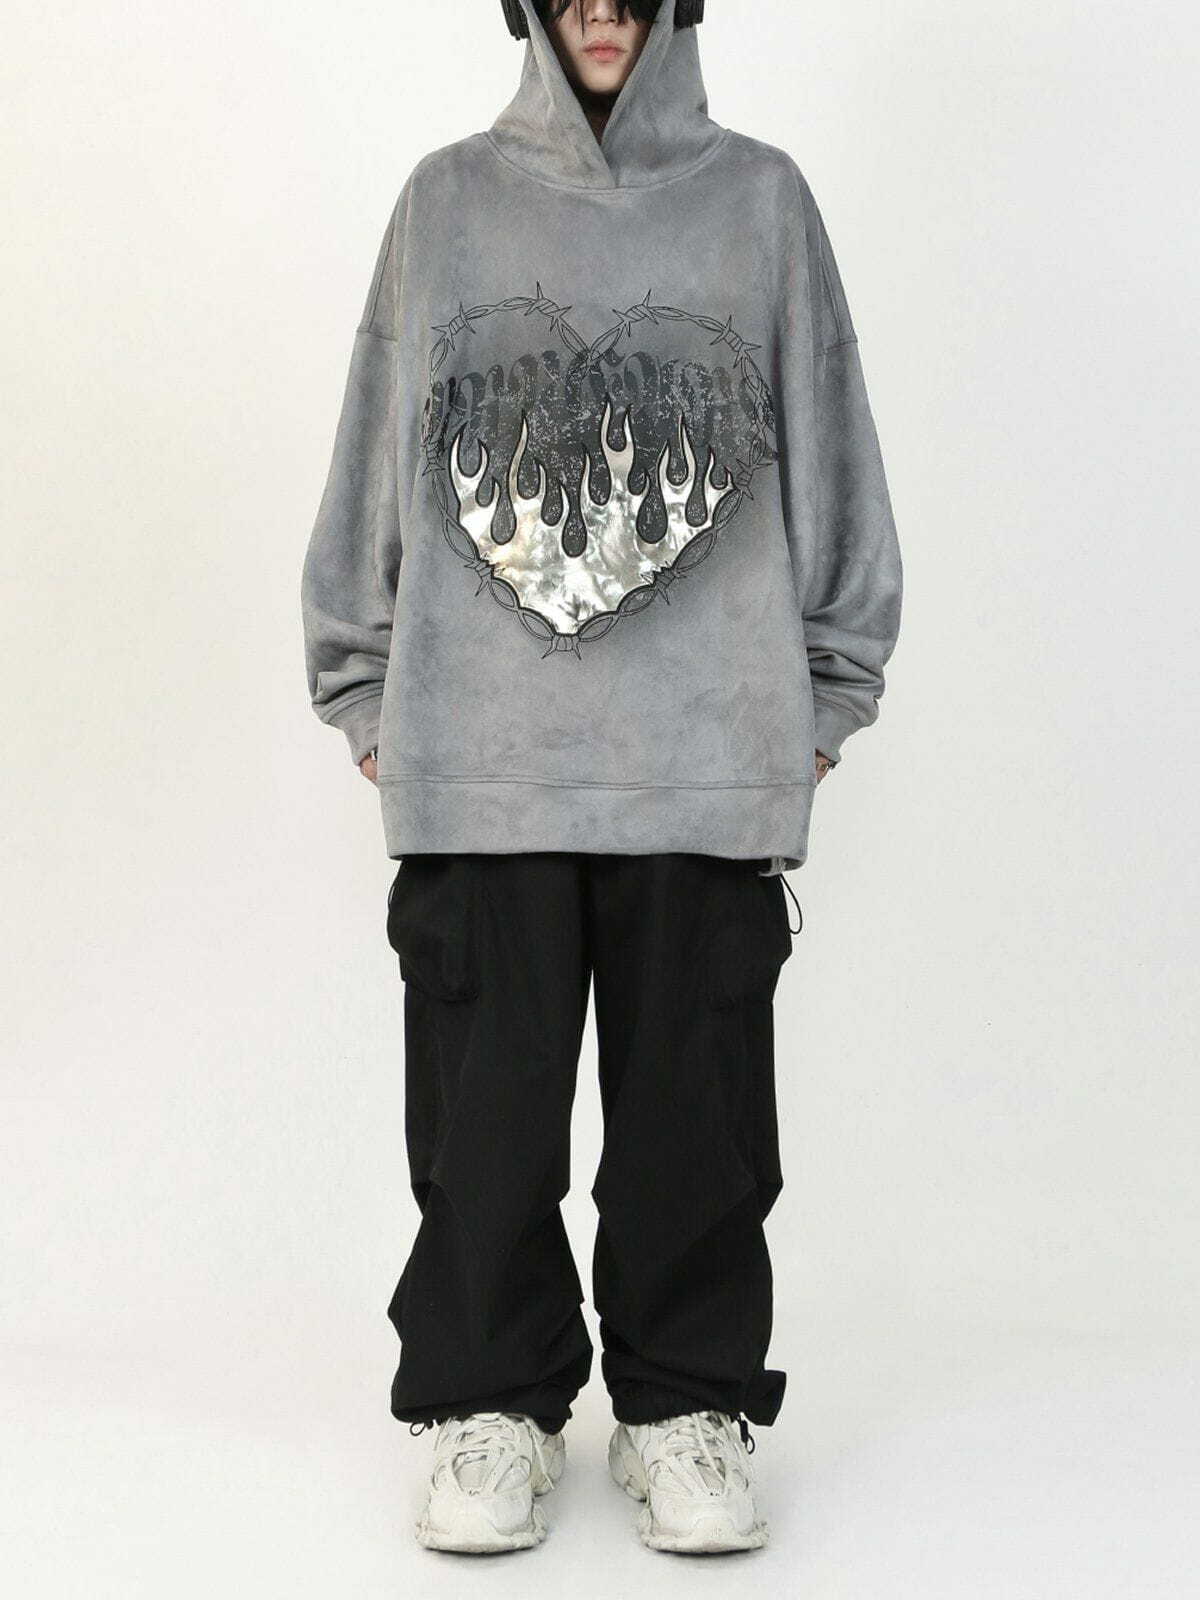 flame suede hoodie edgy & vibrant streetwear 1122